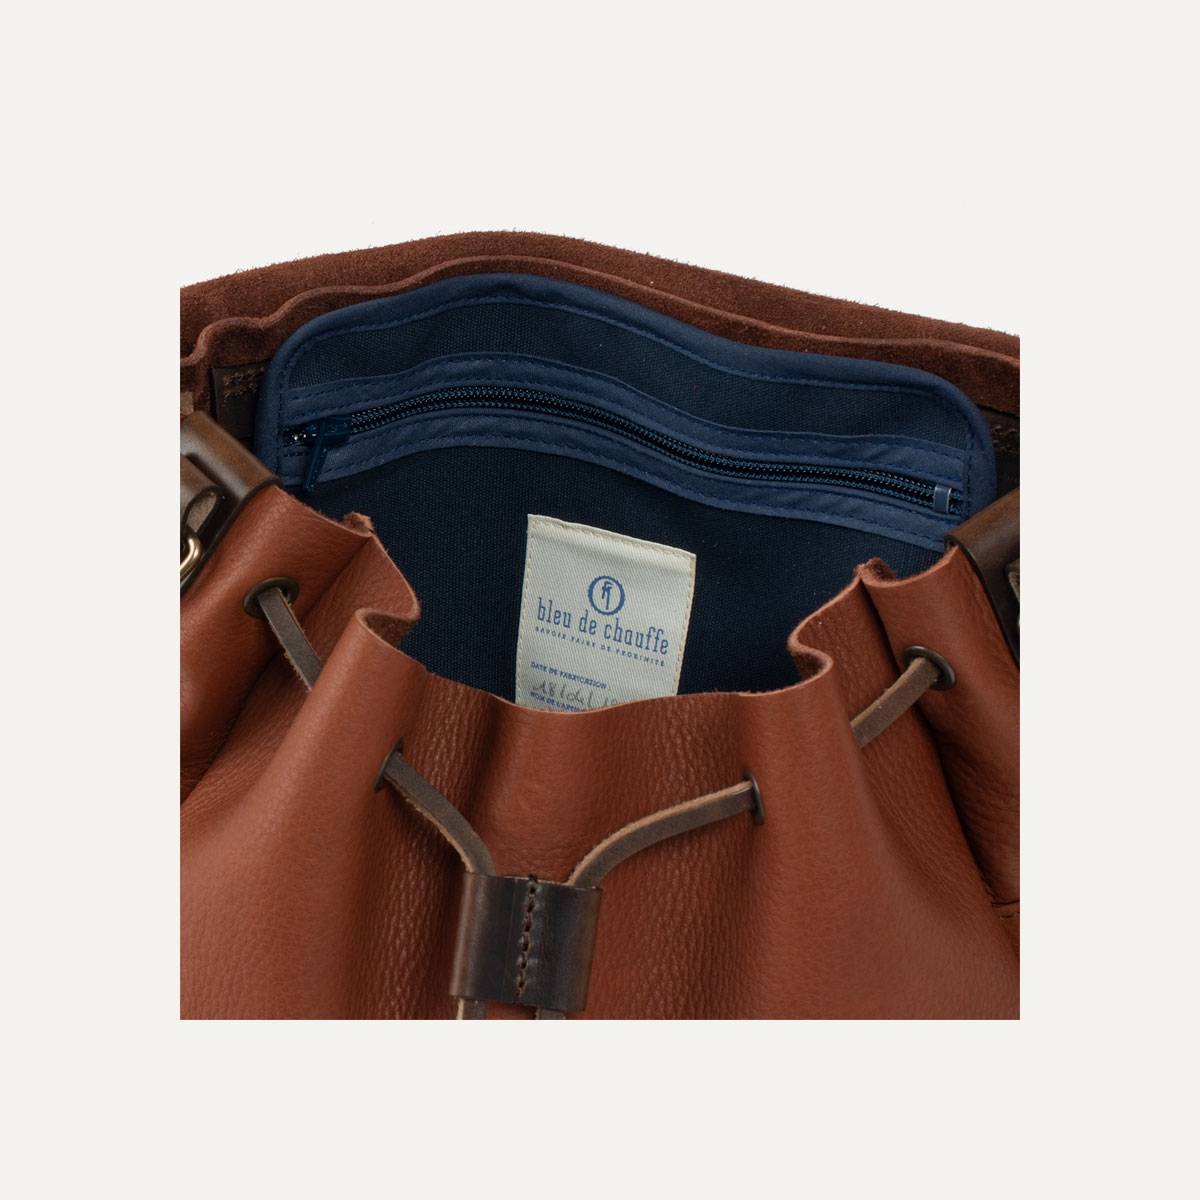 Colette leather satchel - Cuba Libre (image n°5)